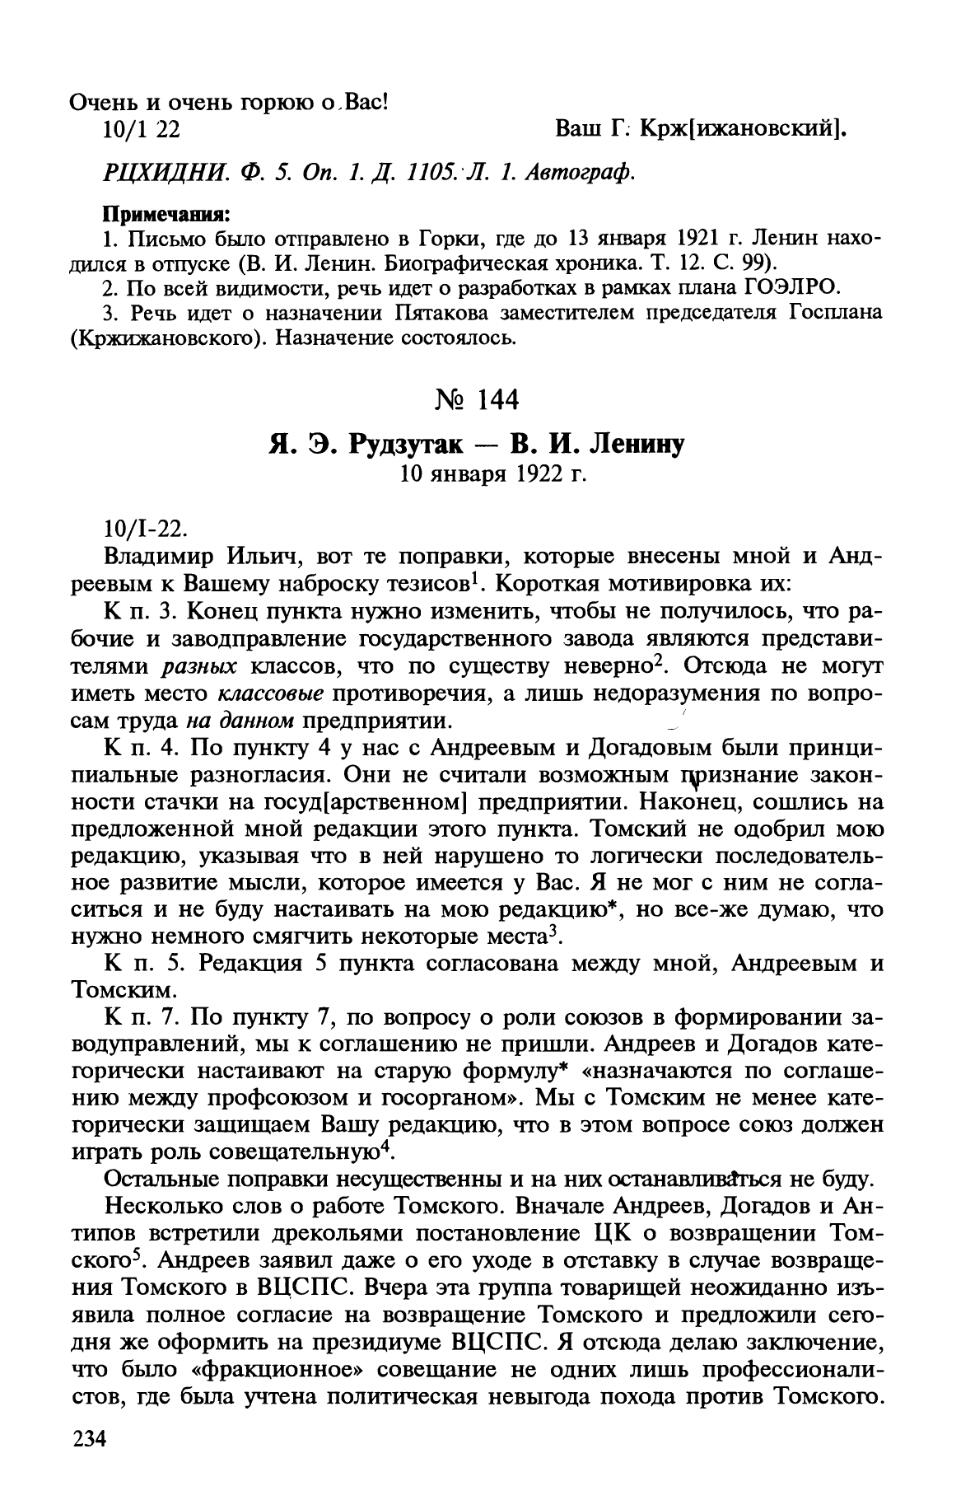 144. Я. Э. Рудзутак — В. И. Ленину. 10 января 1922 г.